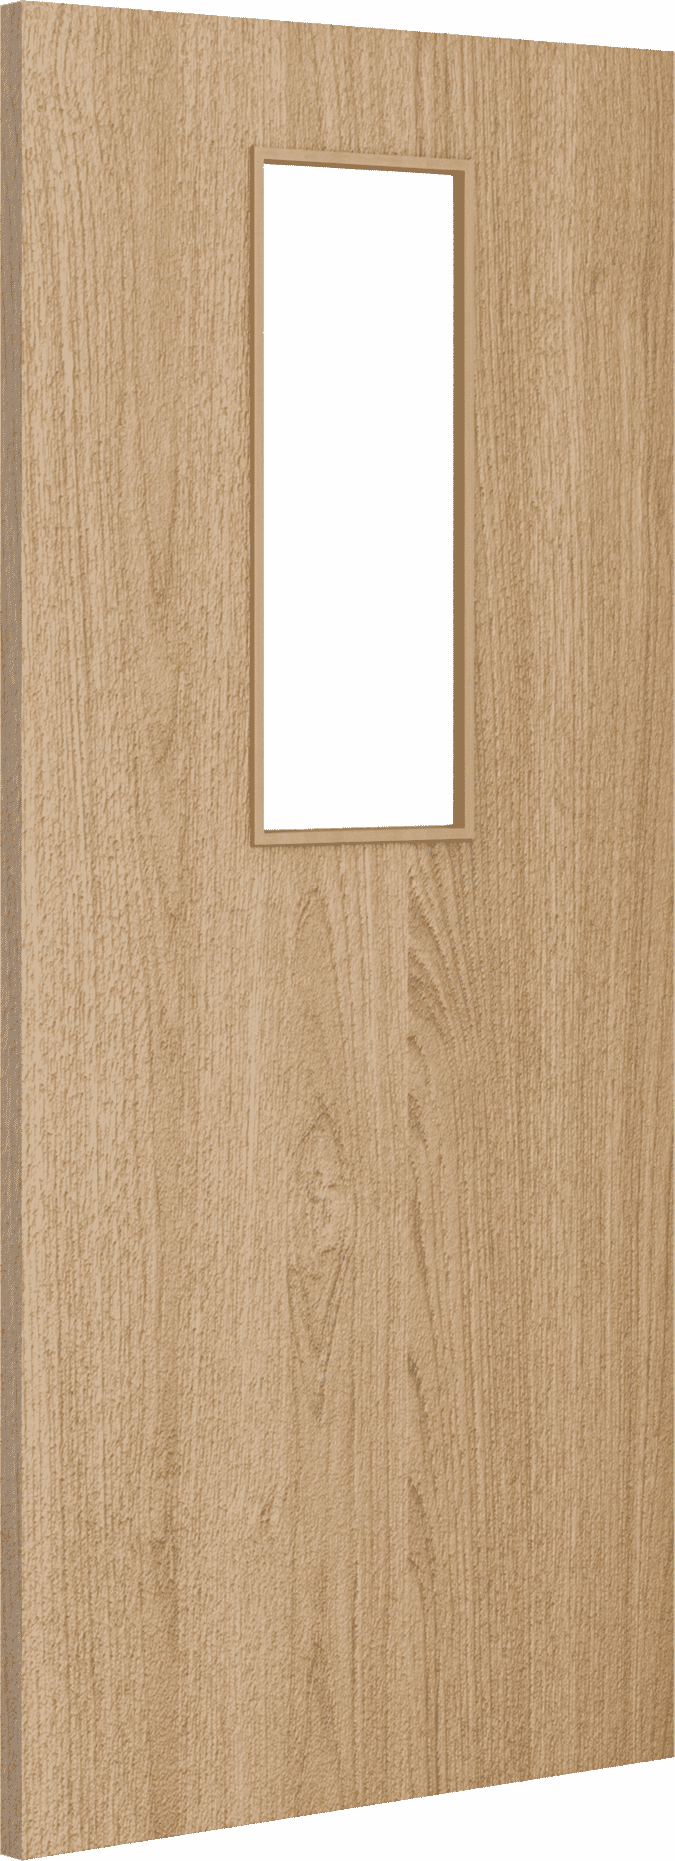 2040mm x 426mm x 44mm Architectural Oak 14 Clear Glazed - Prefinished FD30 Fire Door Blank